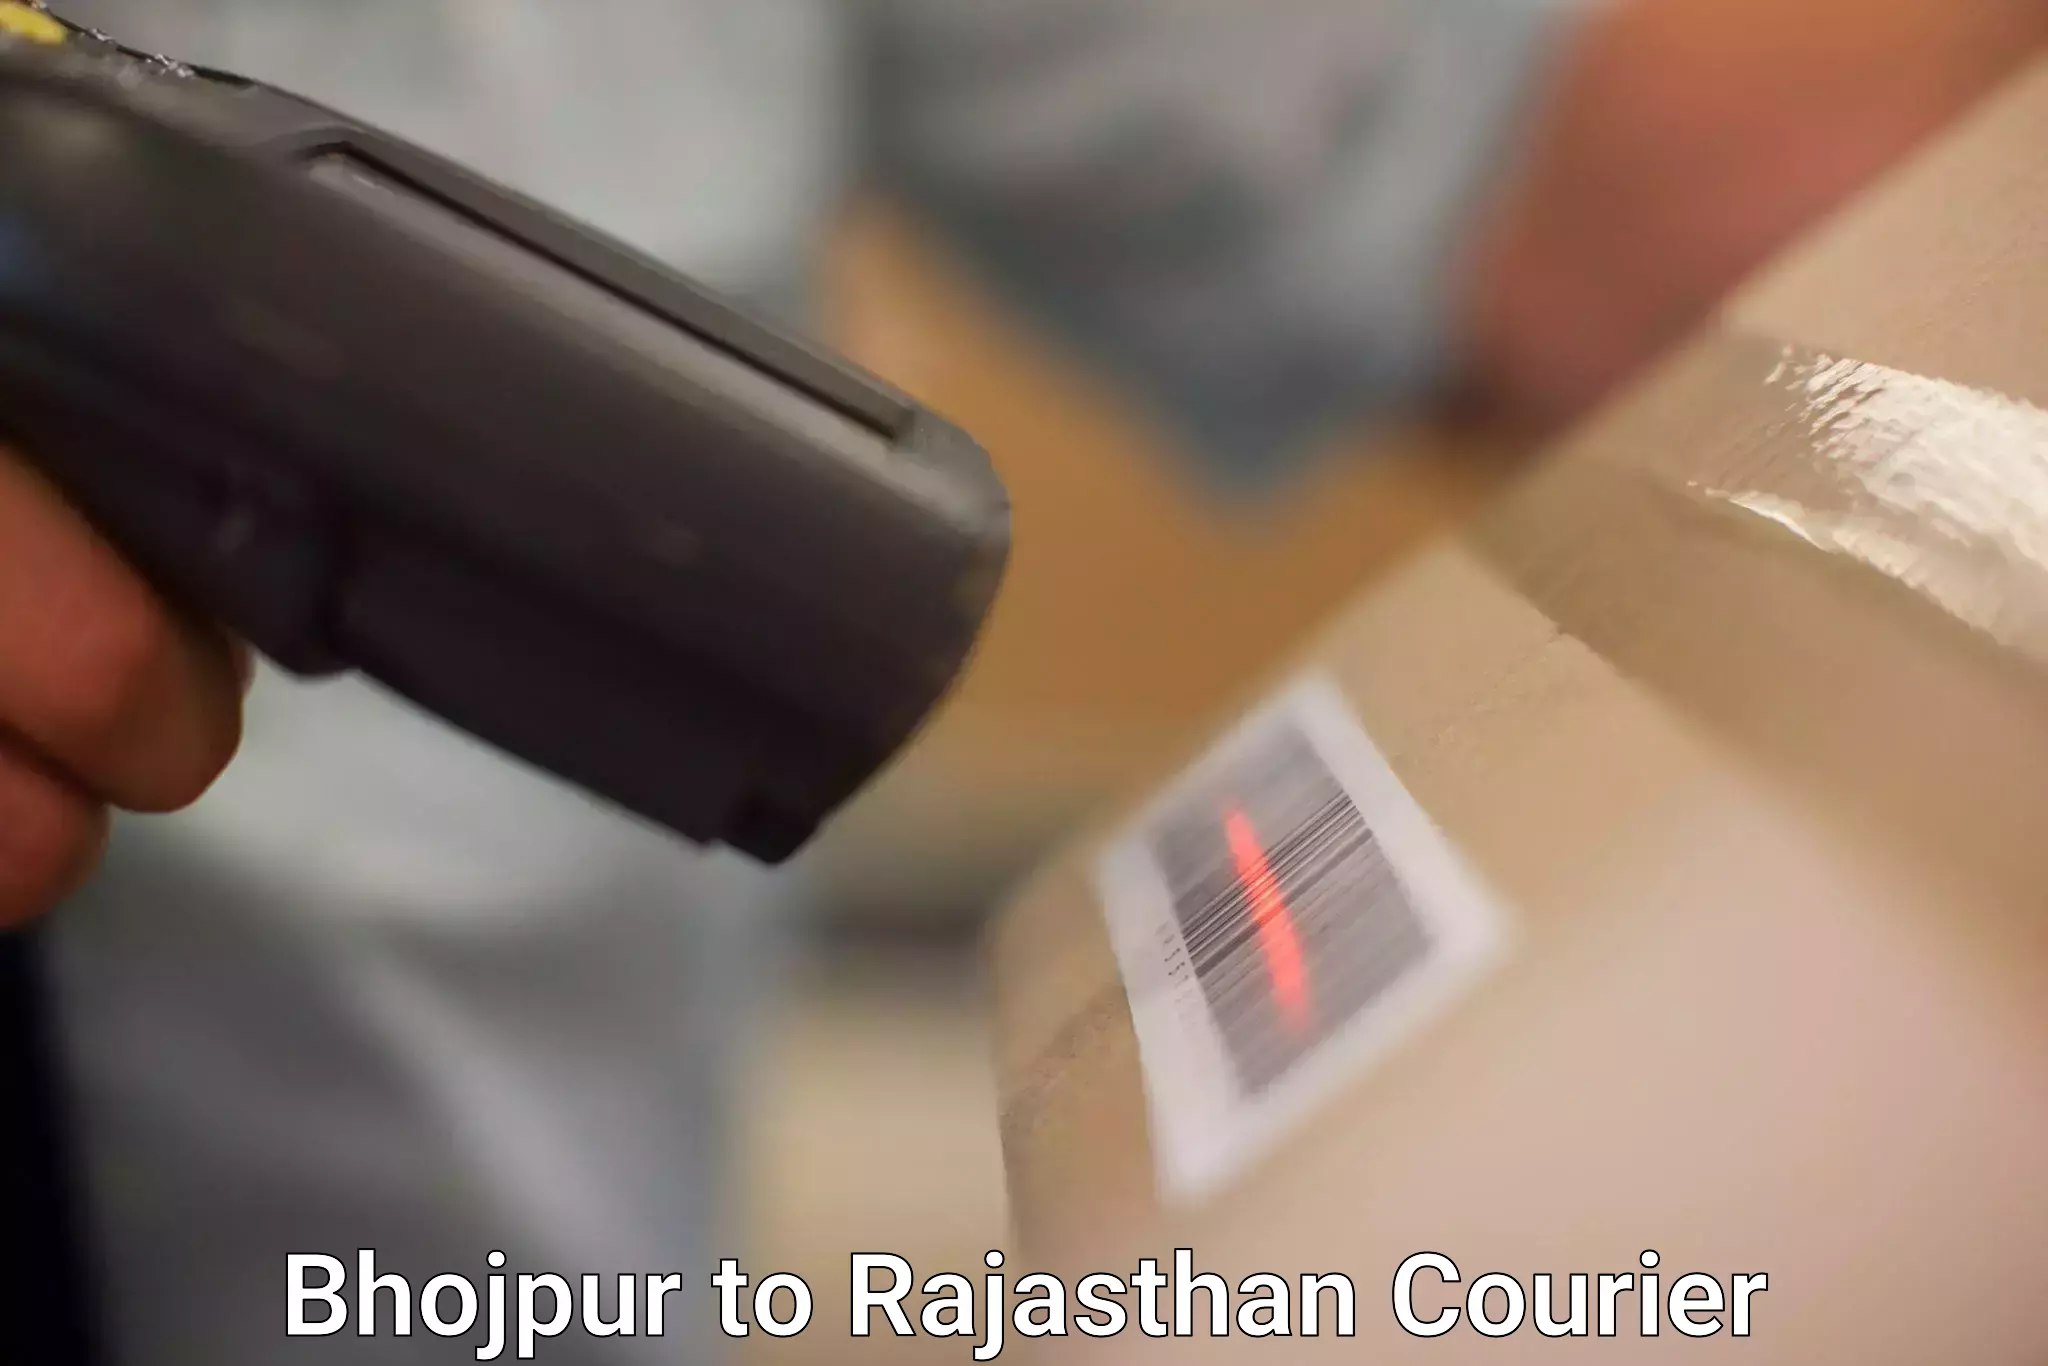 Next-generation courier services Bhojpur to Jaisalmer